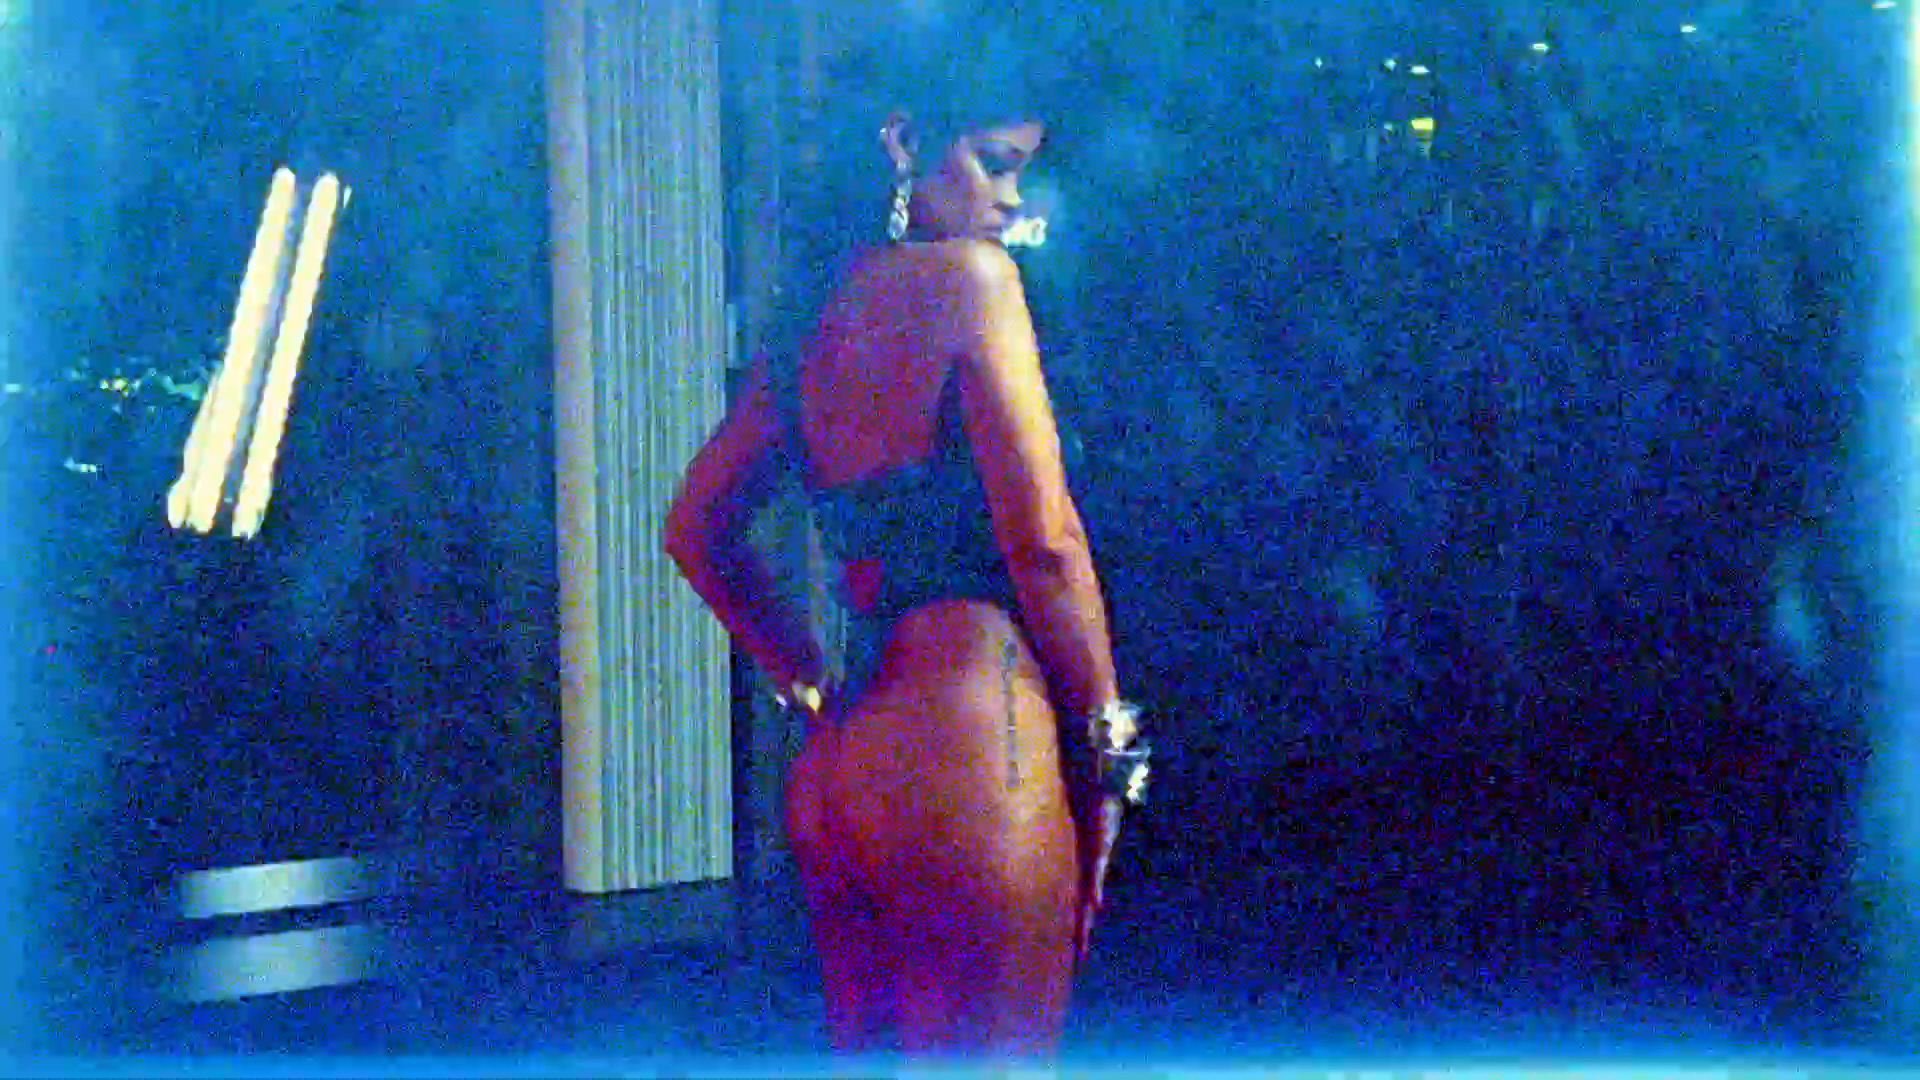 FOTOS Rihanna se roba el show! - Photo 40